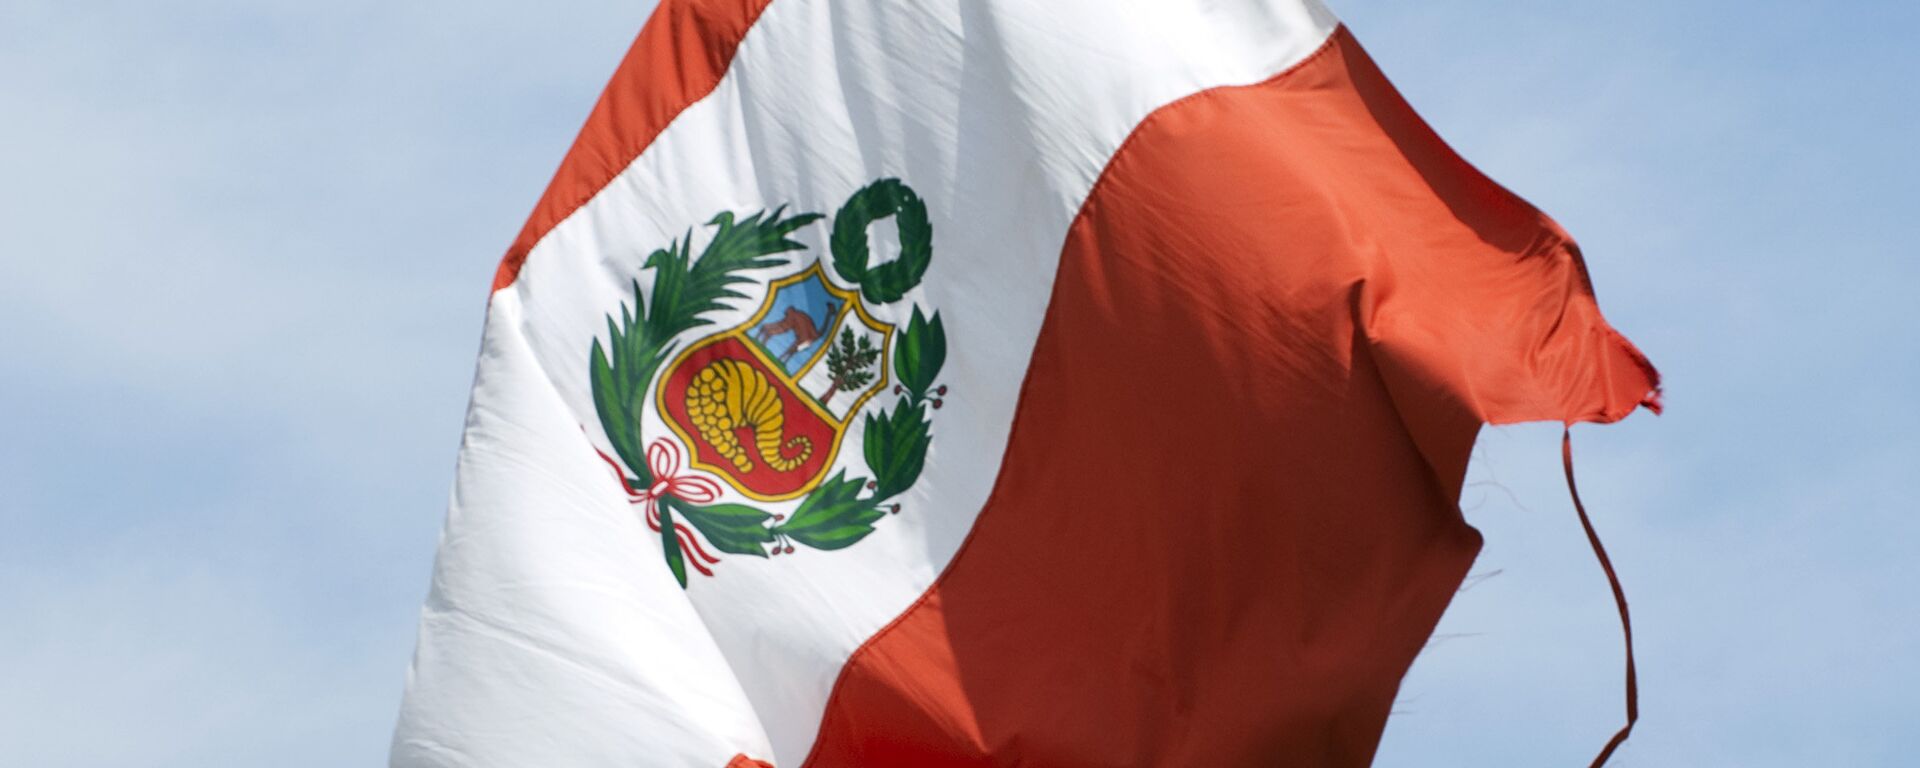 La bandera de Perú - Sputnik Mundo, 1920, 24.11.2021